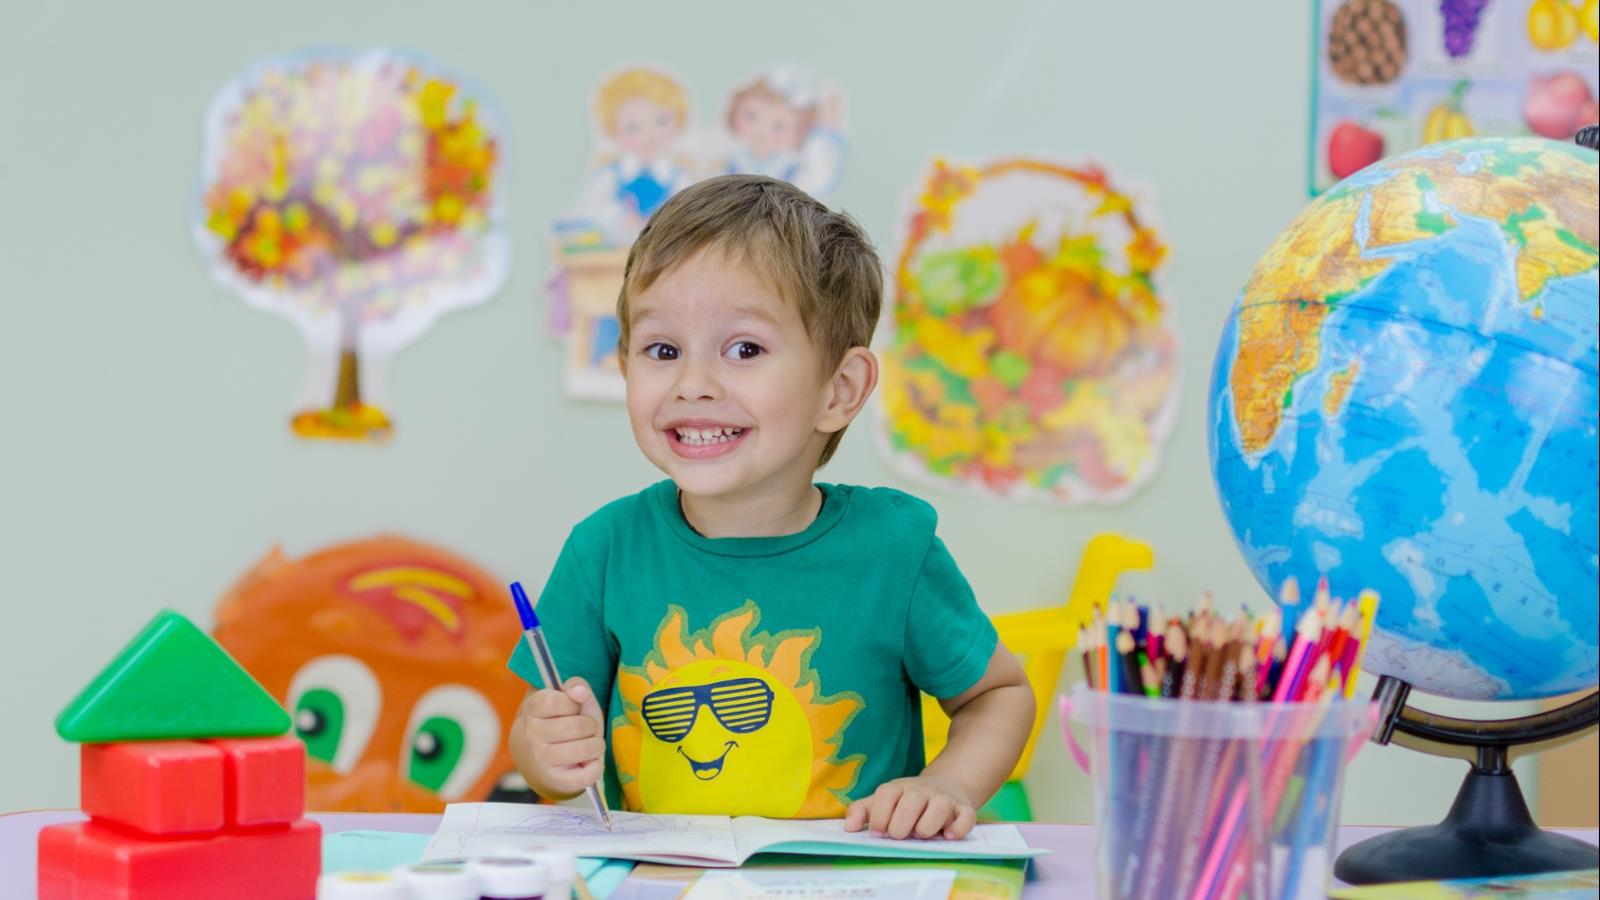 ‪أهم نتيجة للتأمل للأطفال هي زيادة التركيز وتحفيز الإبداع‬ (بيكسابي)